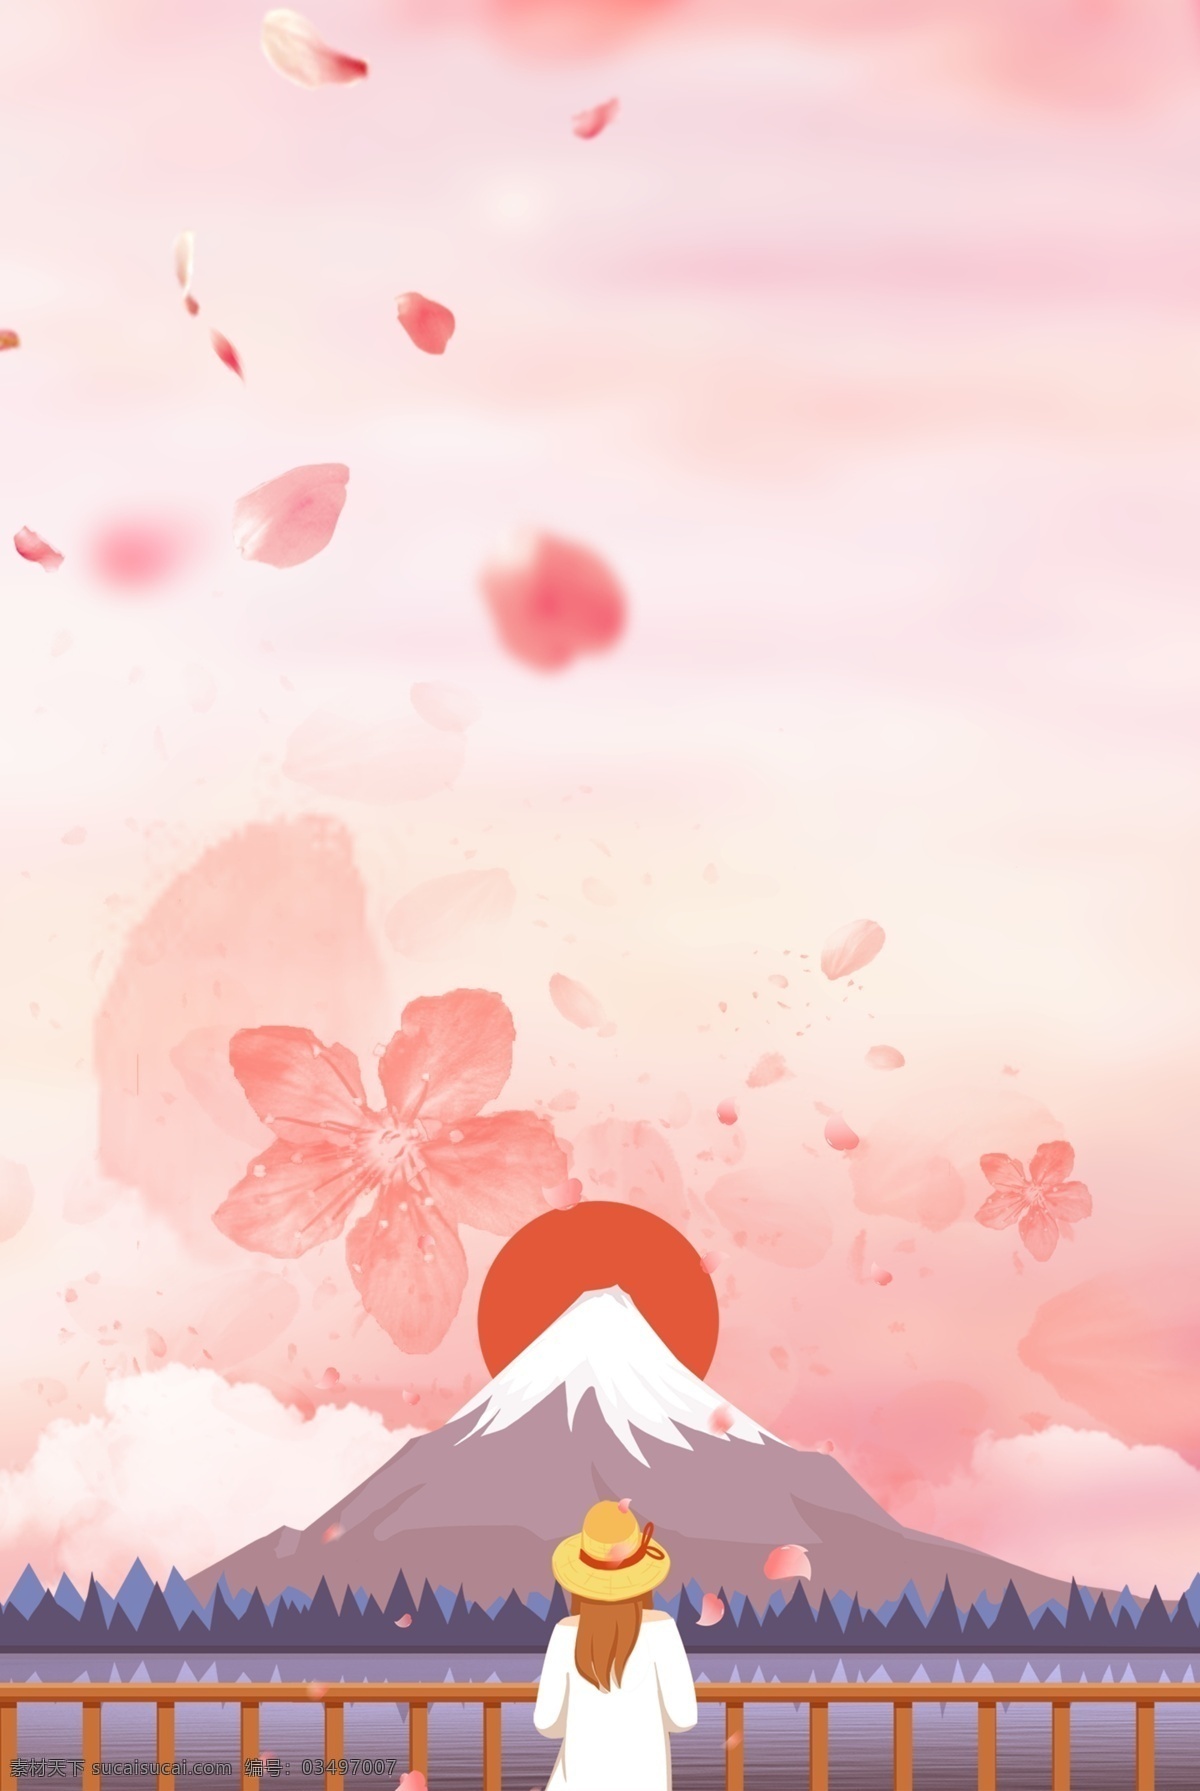 卡 通风 旅途 自然风景 背景 底纹 富士山 扁平 卡通 简约 粉色 风景 樱花 手绘 清新